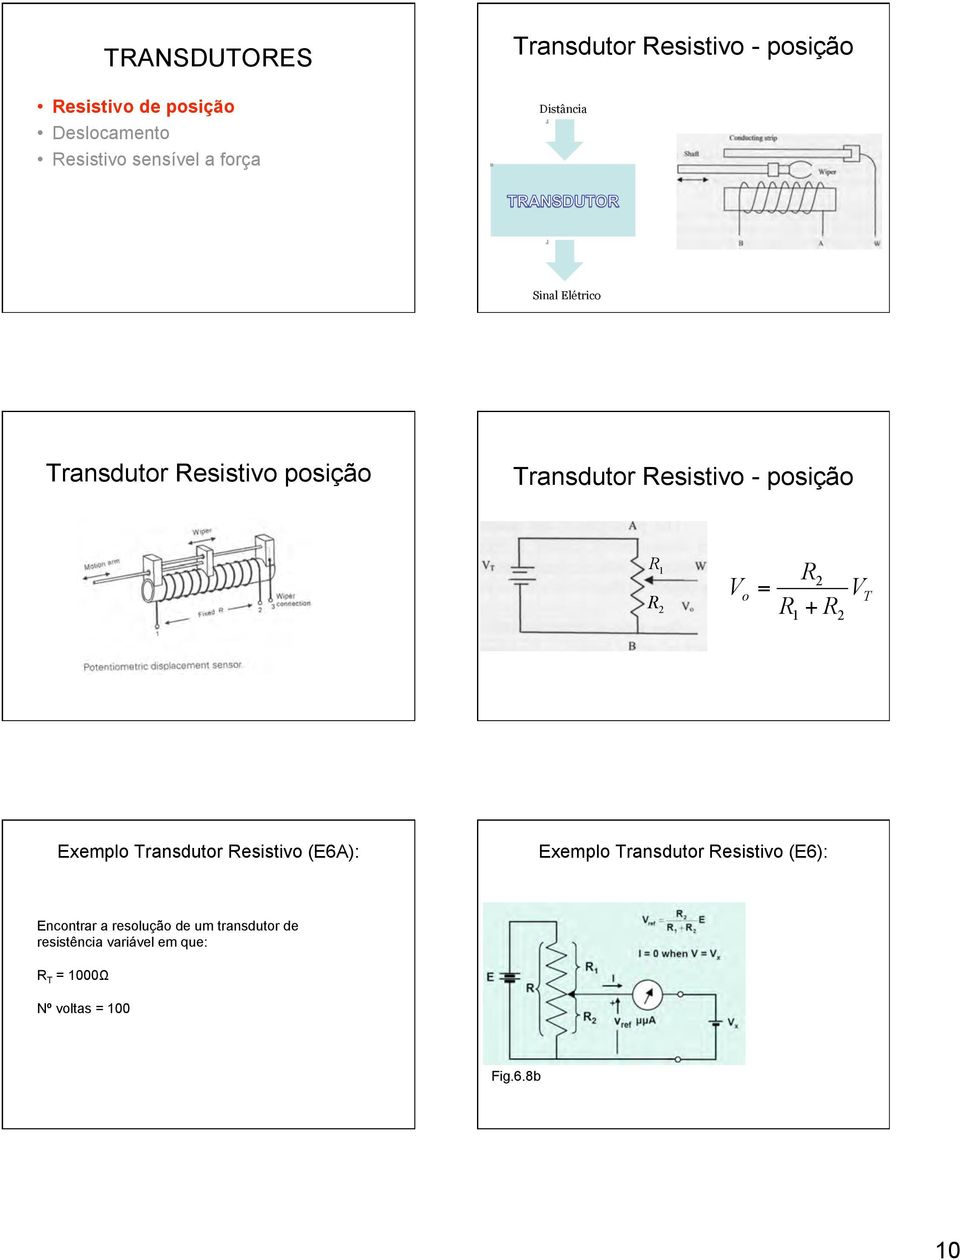 2 V = R 2 o V T R1 + R2 Exemplo Transdutor Resistivo (E6A): Exemplo Transdutor Resistivo (E6):